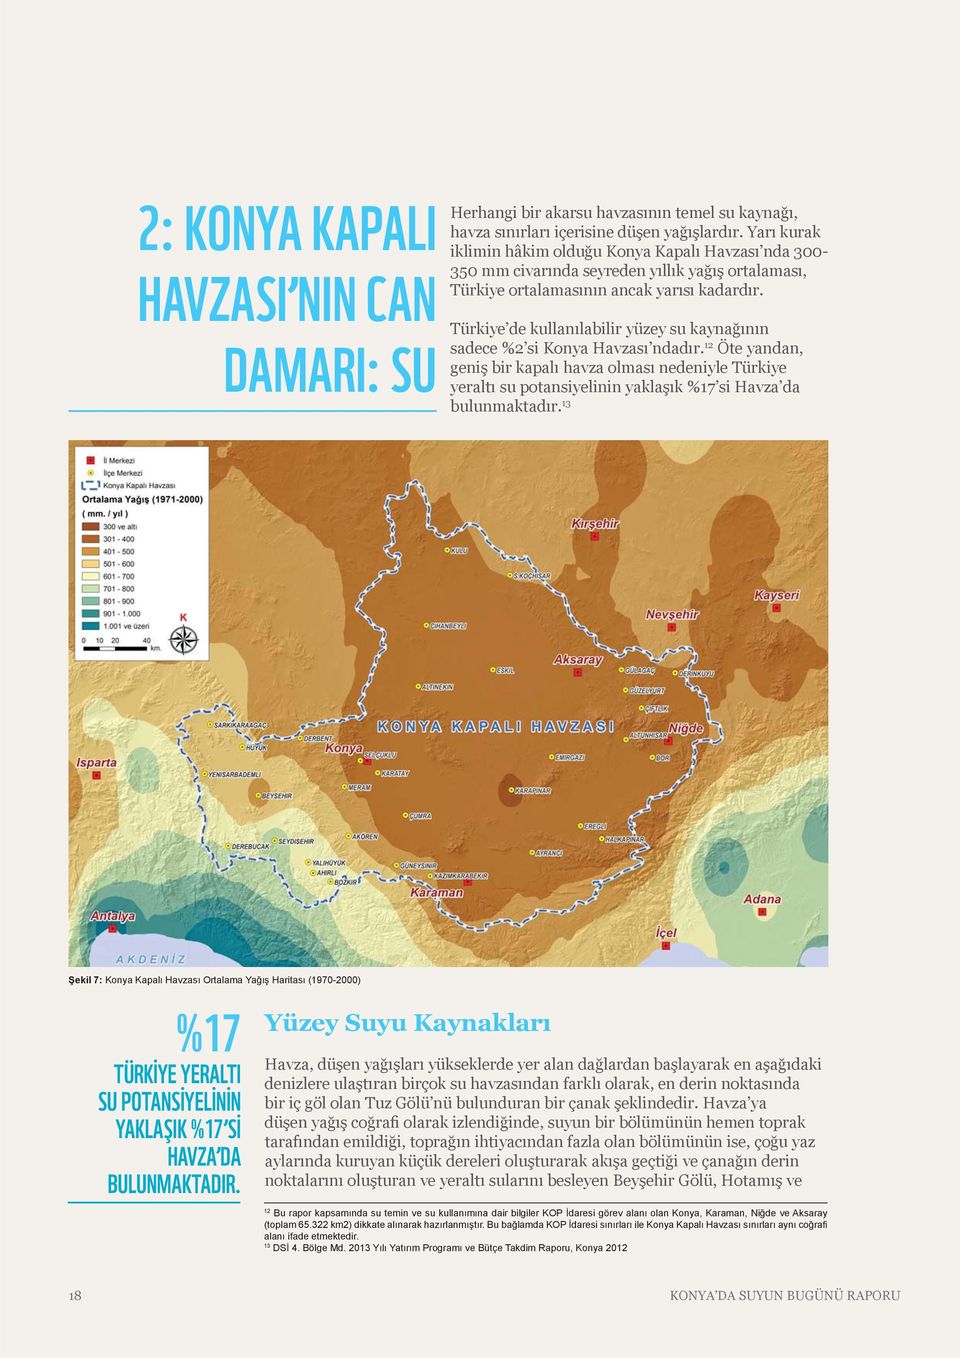 Türkiye de kullanılabilir yüzey su kaynağının sadece %2 si Konya Havzası ndadır.